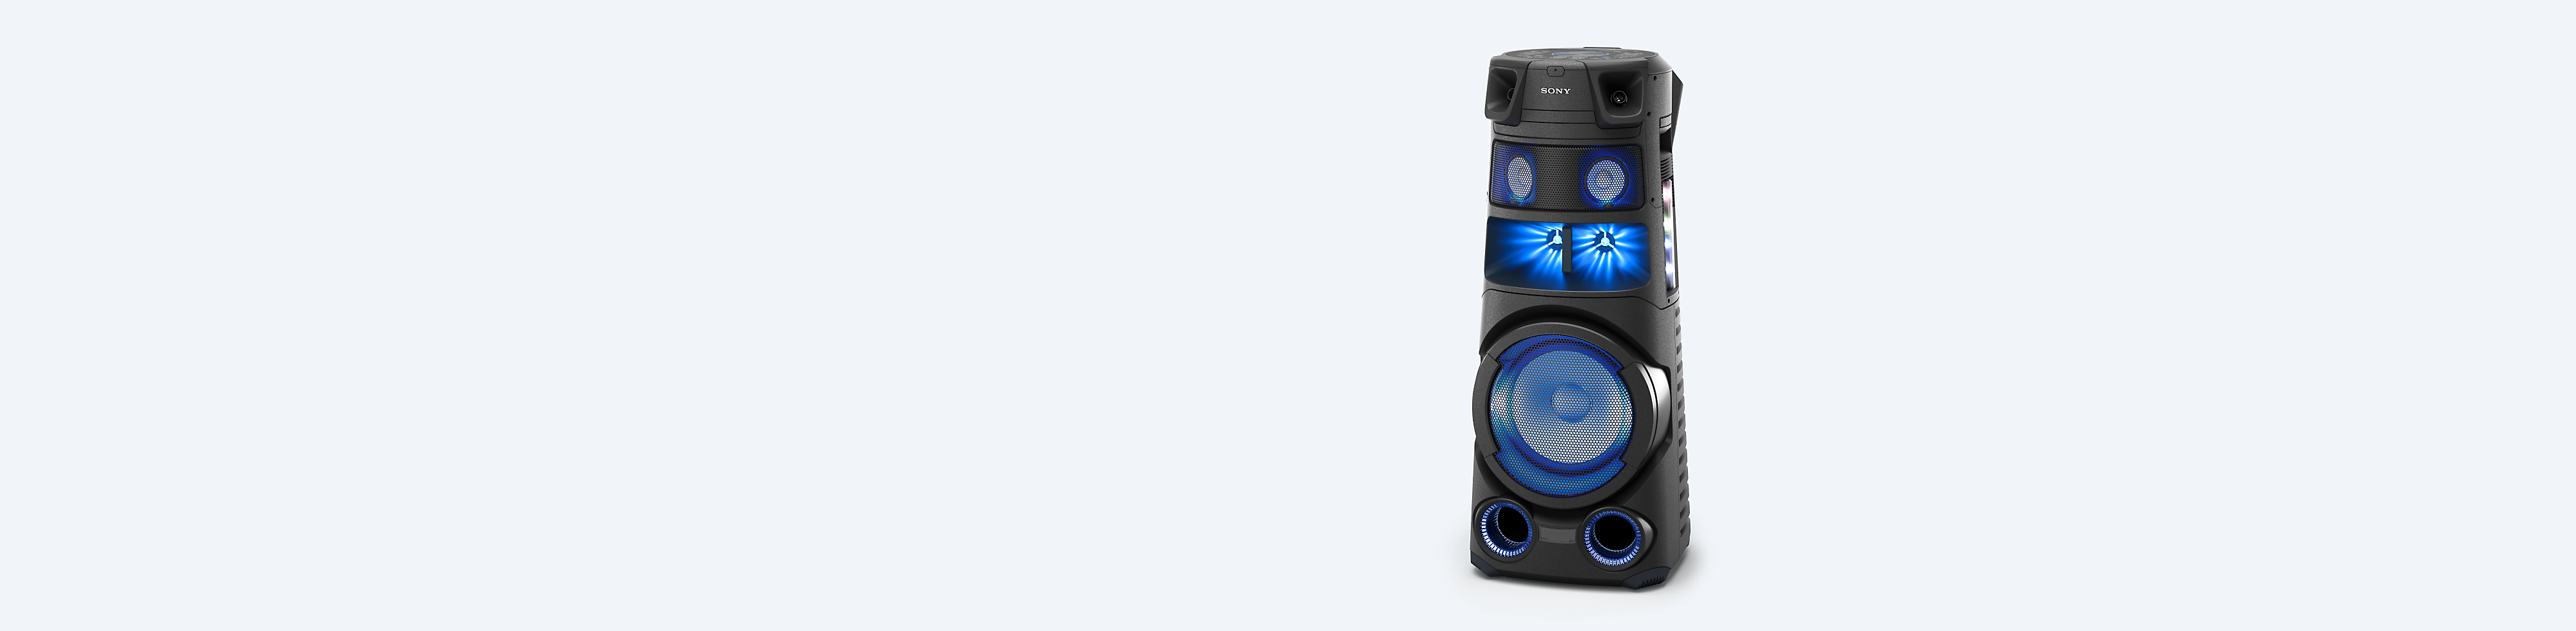 מערכת שמע עוצמתית של Sony על רקע כחול